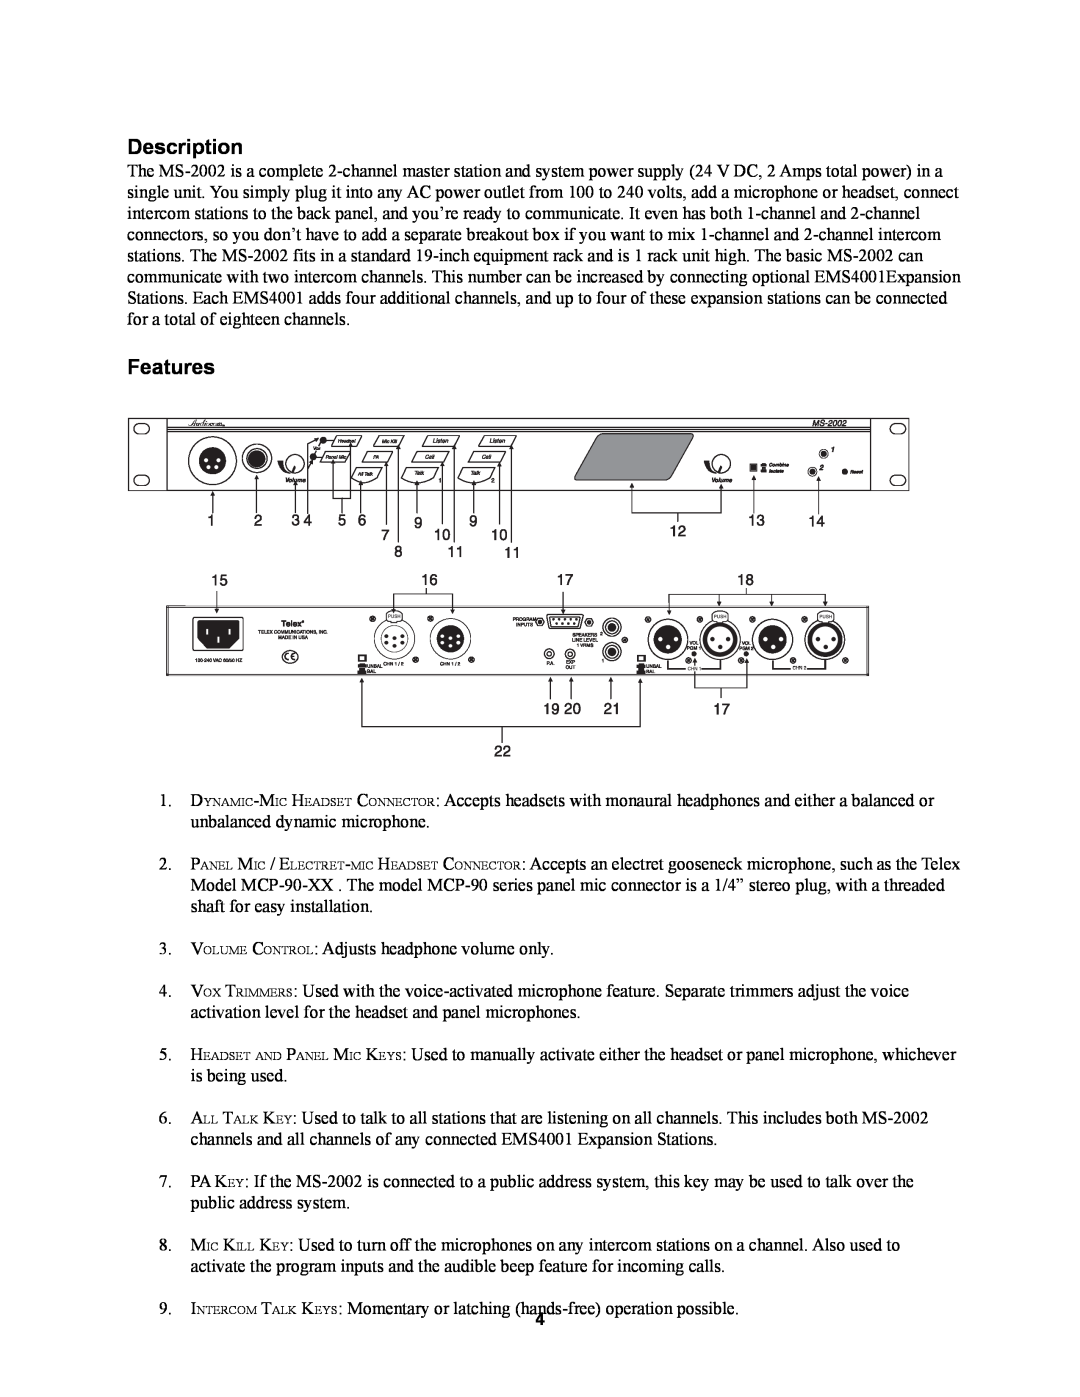 Telex MS2002 manual Description, Features 